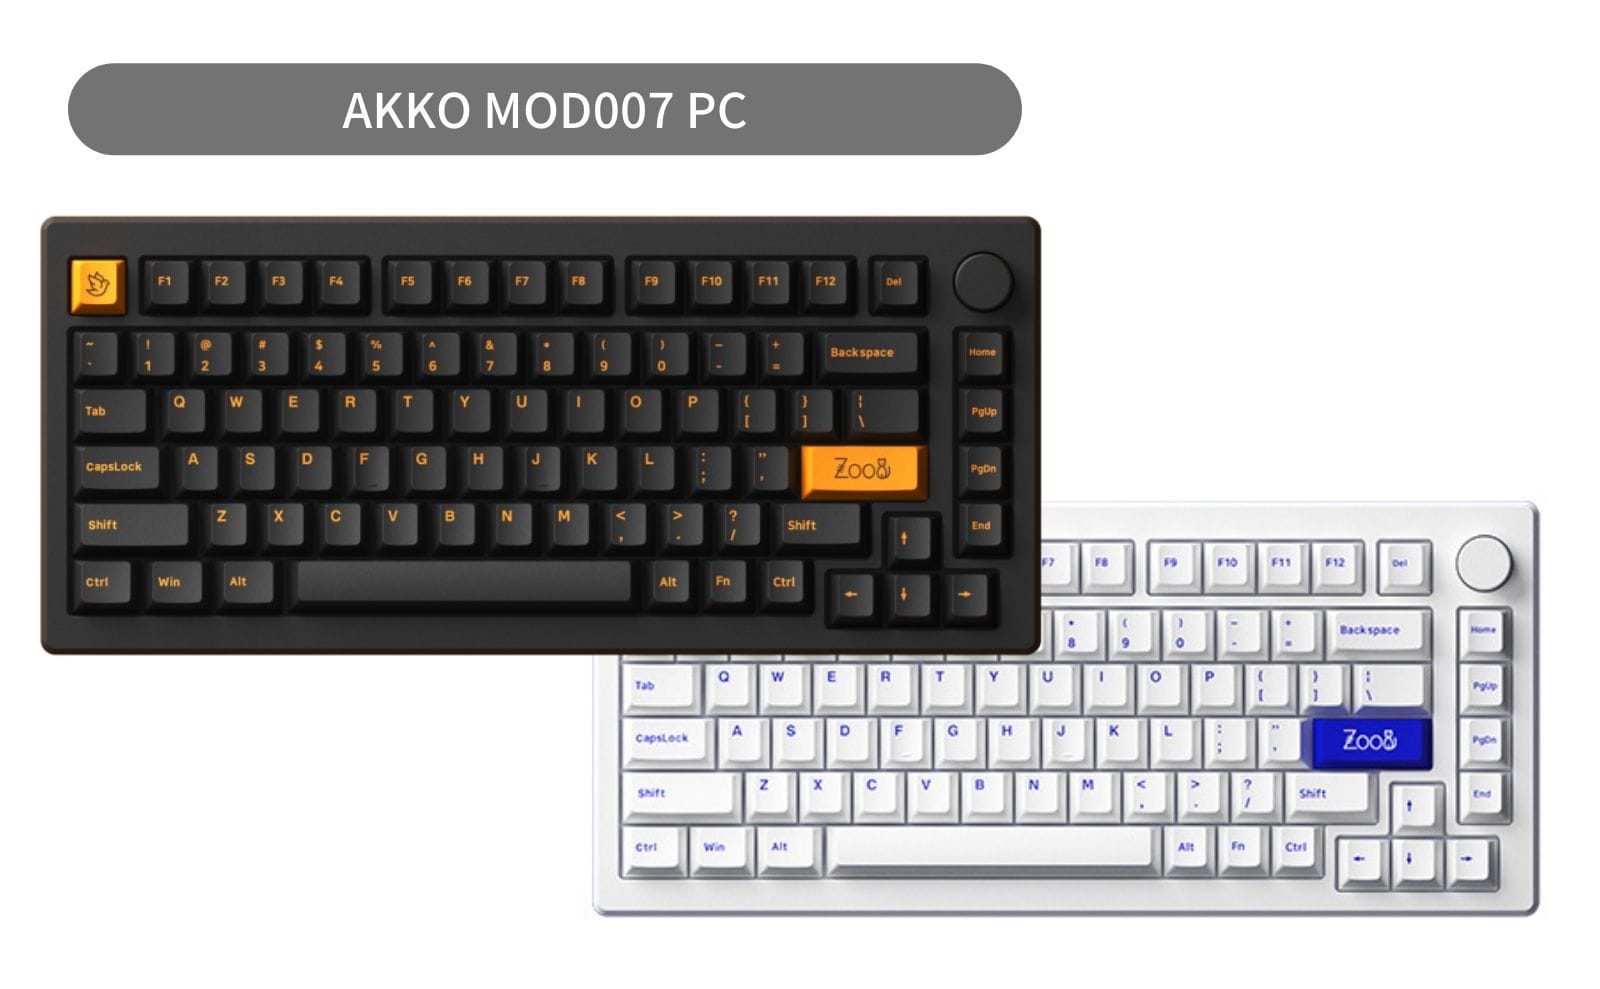 Akko MOD 007 PC 打鍵音レビュー